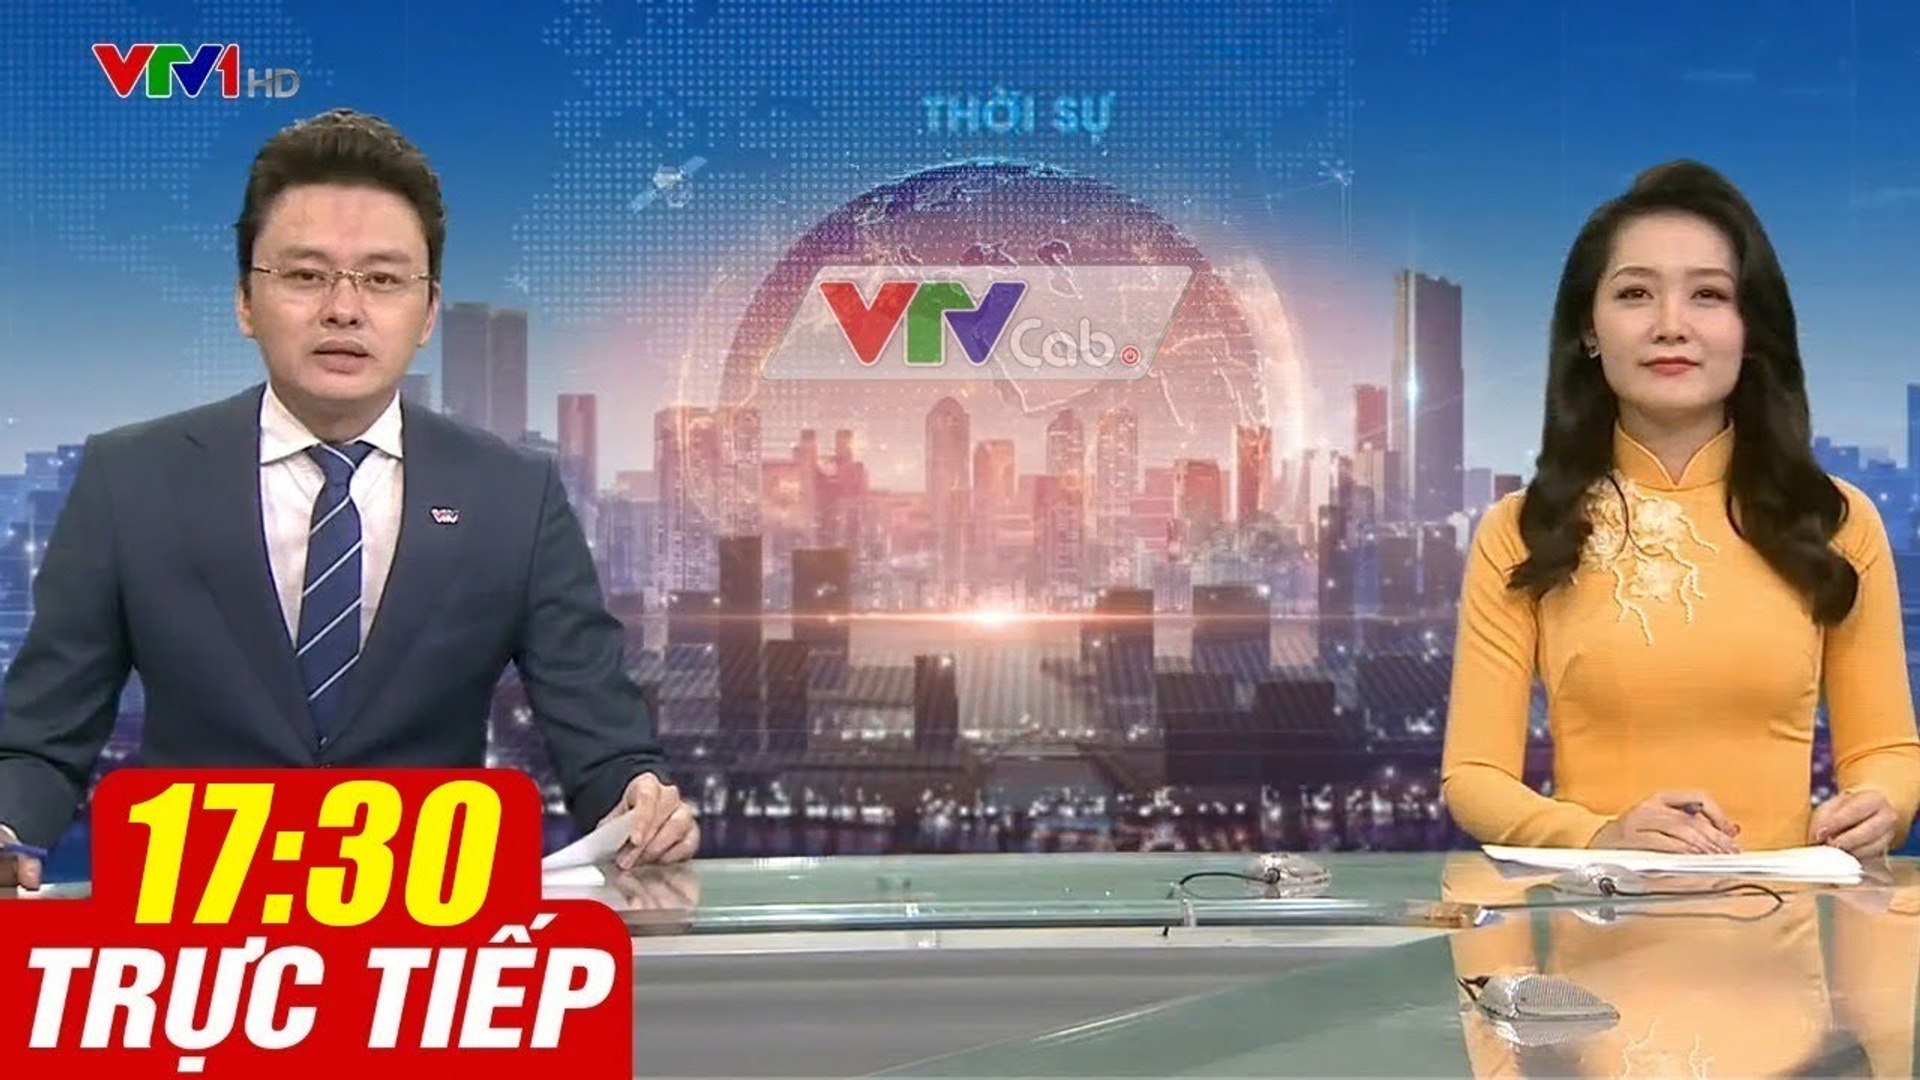 Trực Tiếp VIỆT NAM HÔM NAY 17h30 ngày 30.09.2020  Tin tức thời sự VTV1 mới nhất hôm nay